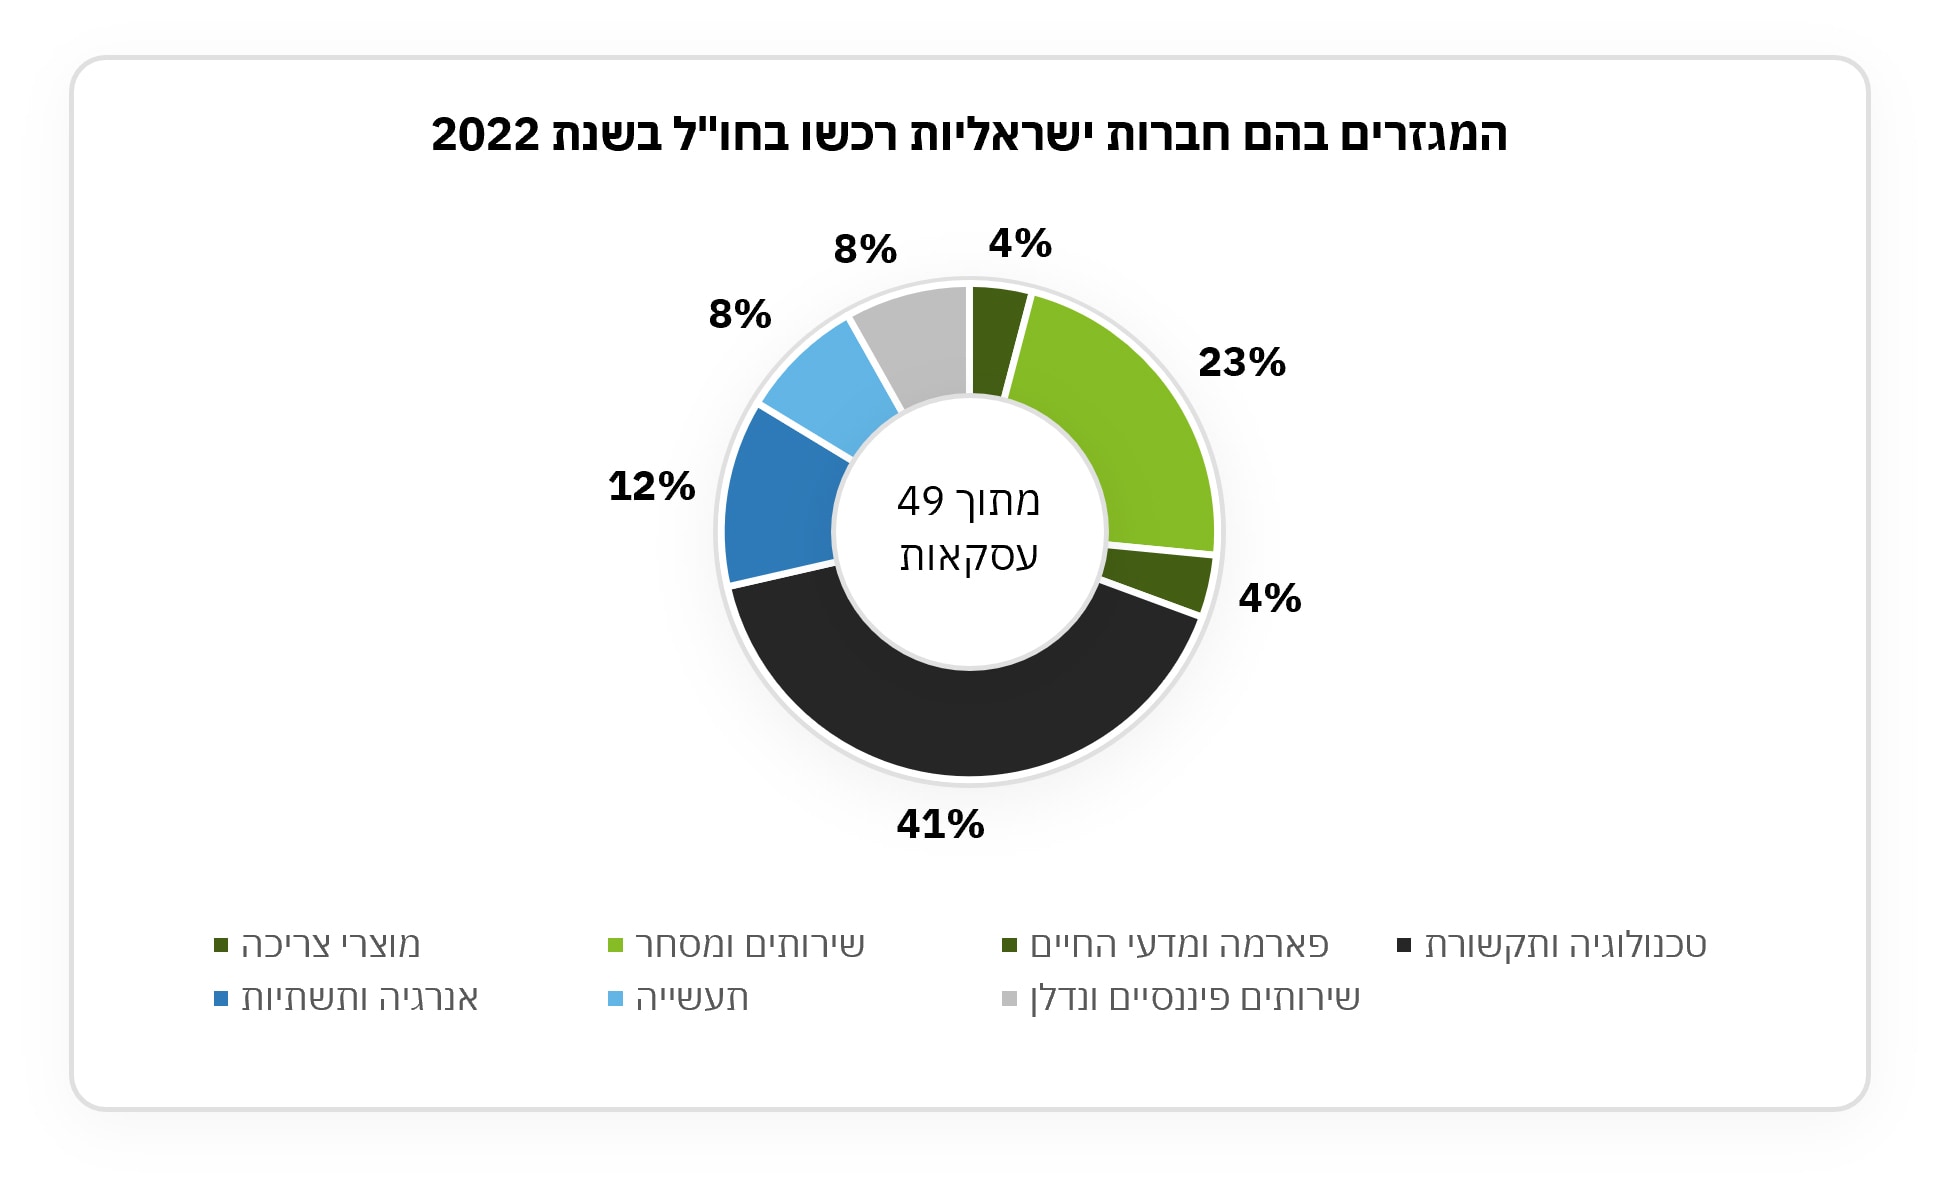 המגזרים בהם חברות ישראליות רכשו בחול בשנת 2022